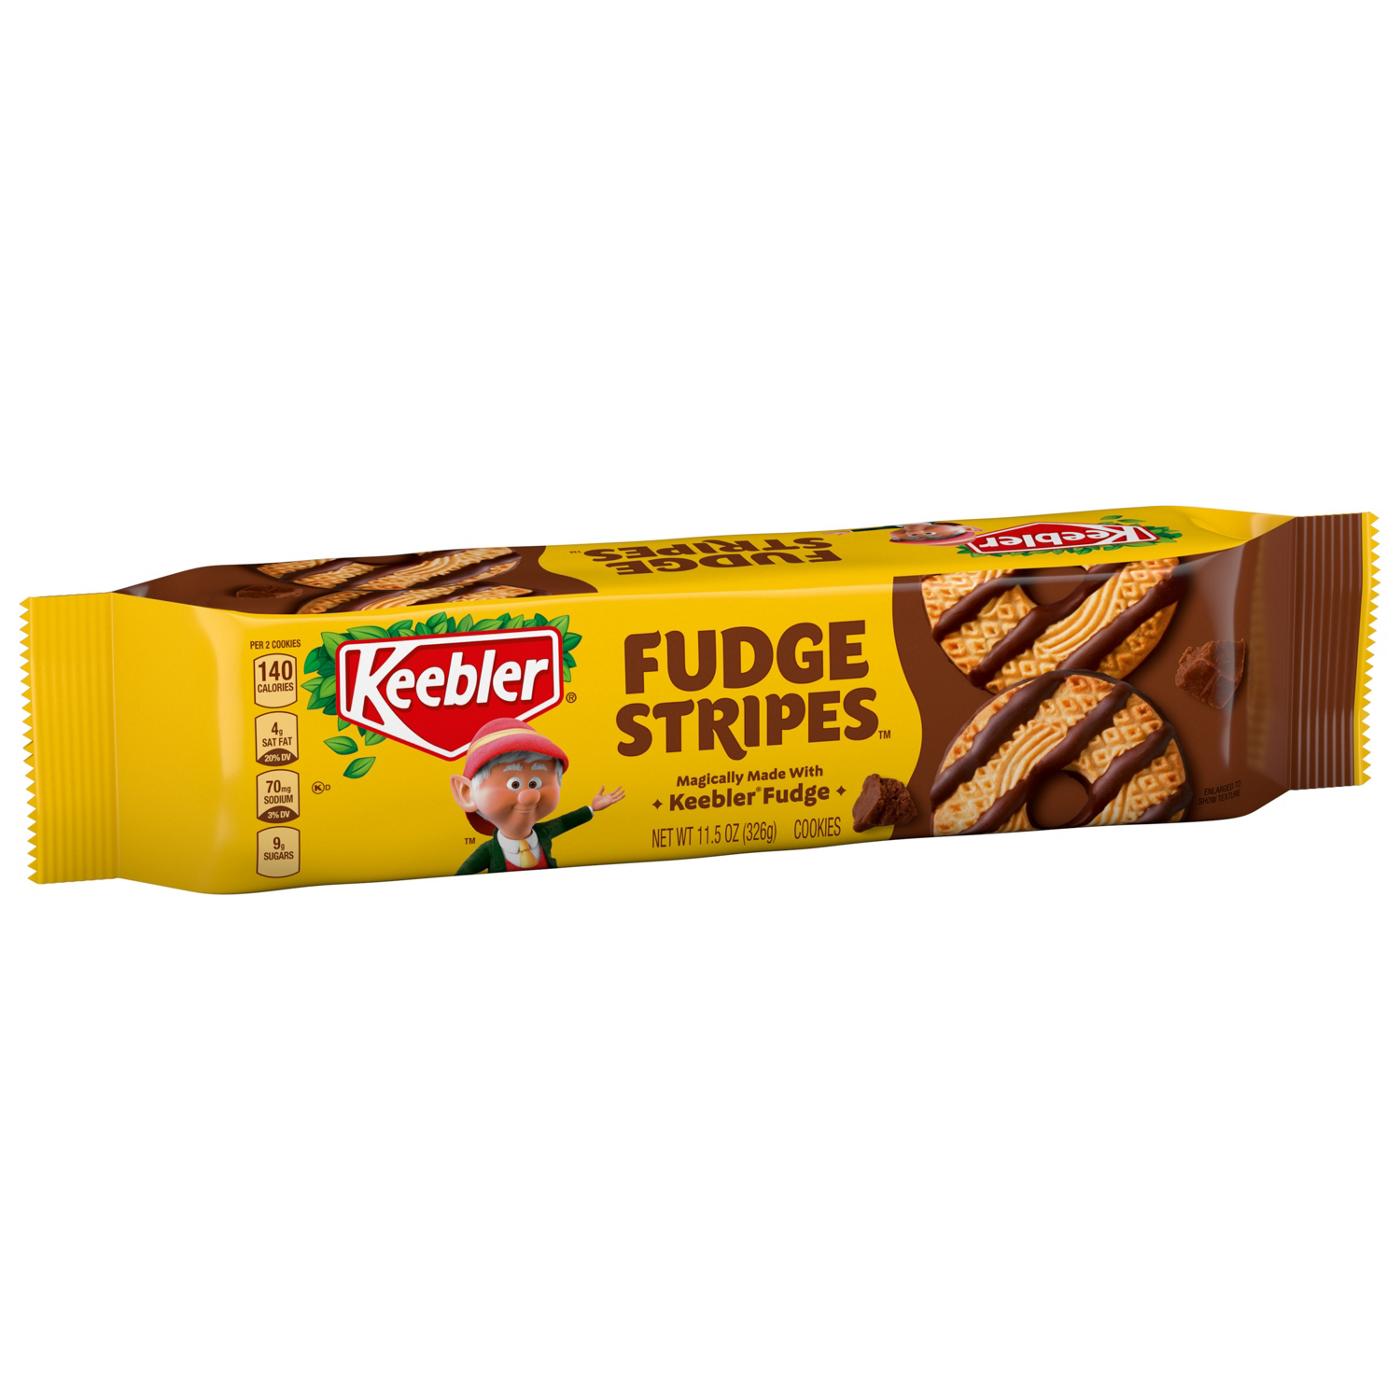 Keebler Fudge Stripes Cookies; image 2 of 5